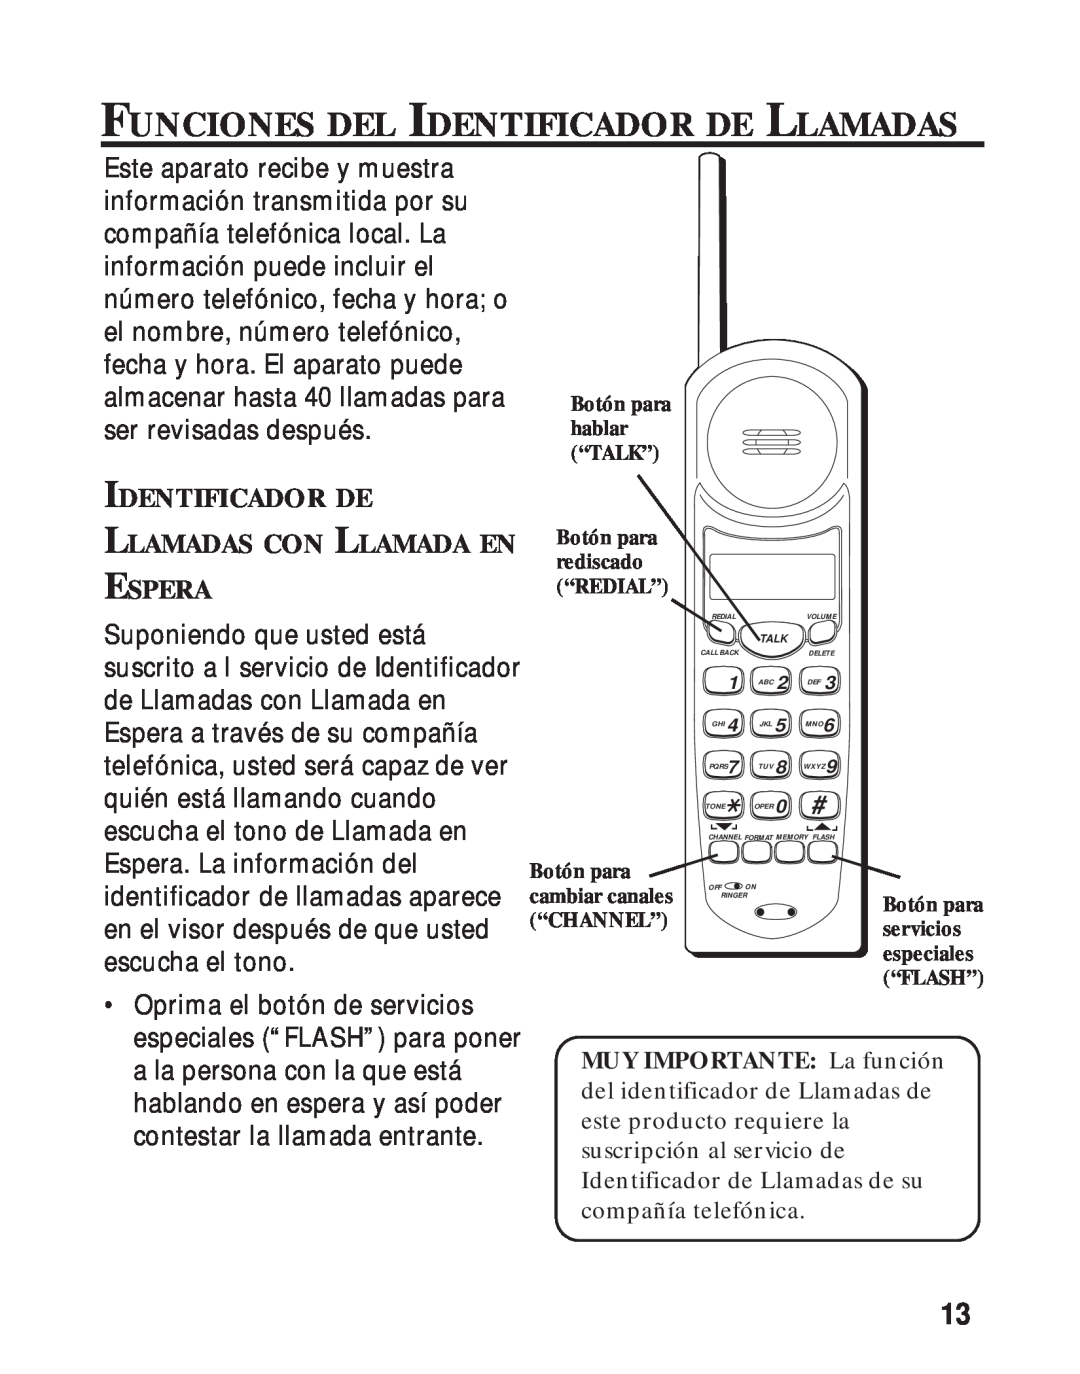 RCA 26730 manual Funciones Del Identificador De Llamadas, Llamadas Con Llamada En Espera 